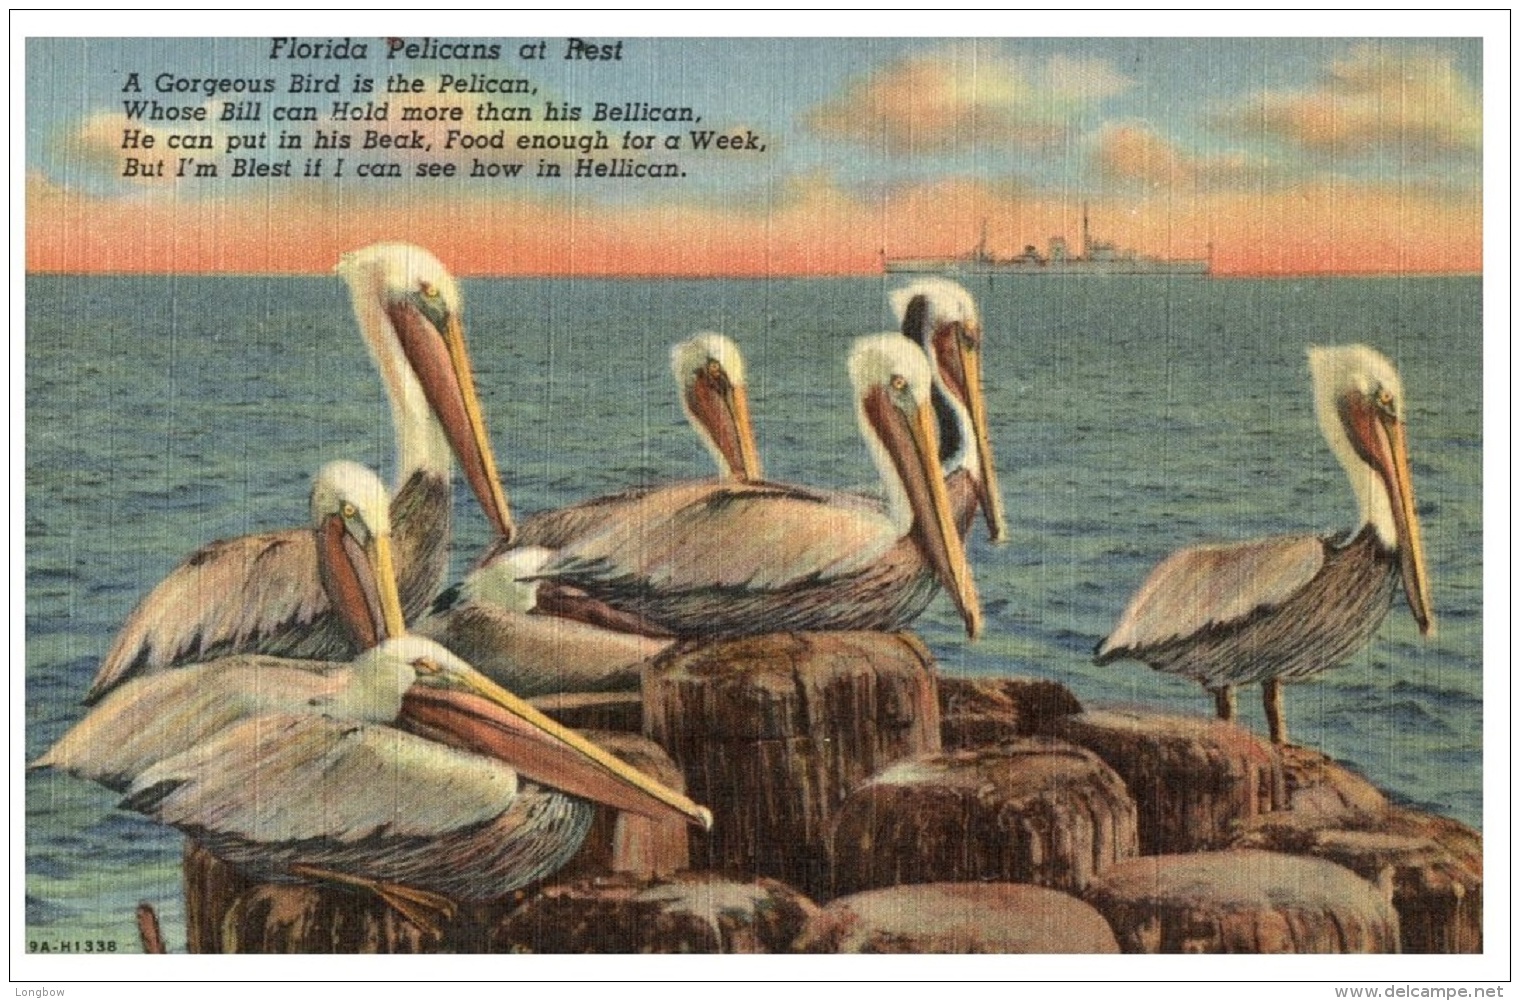 Florida Pelicans - Sarasota